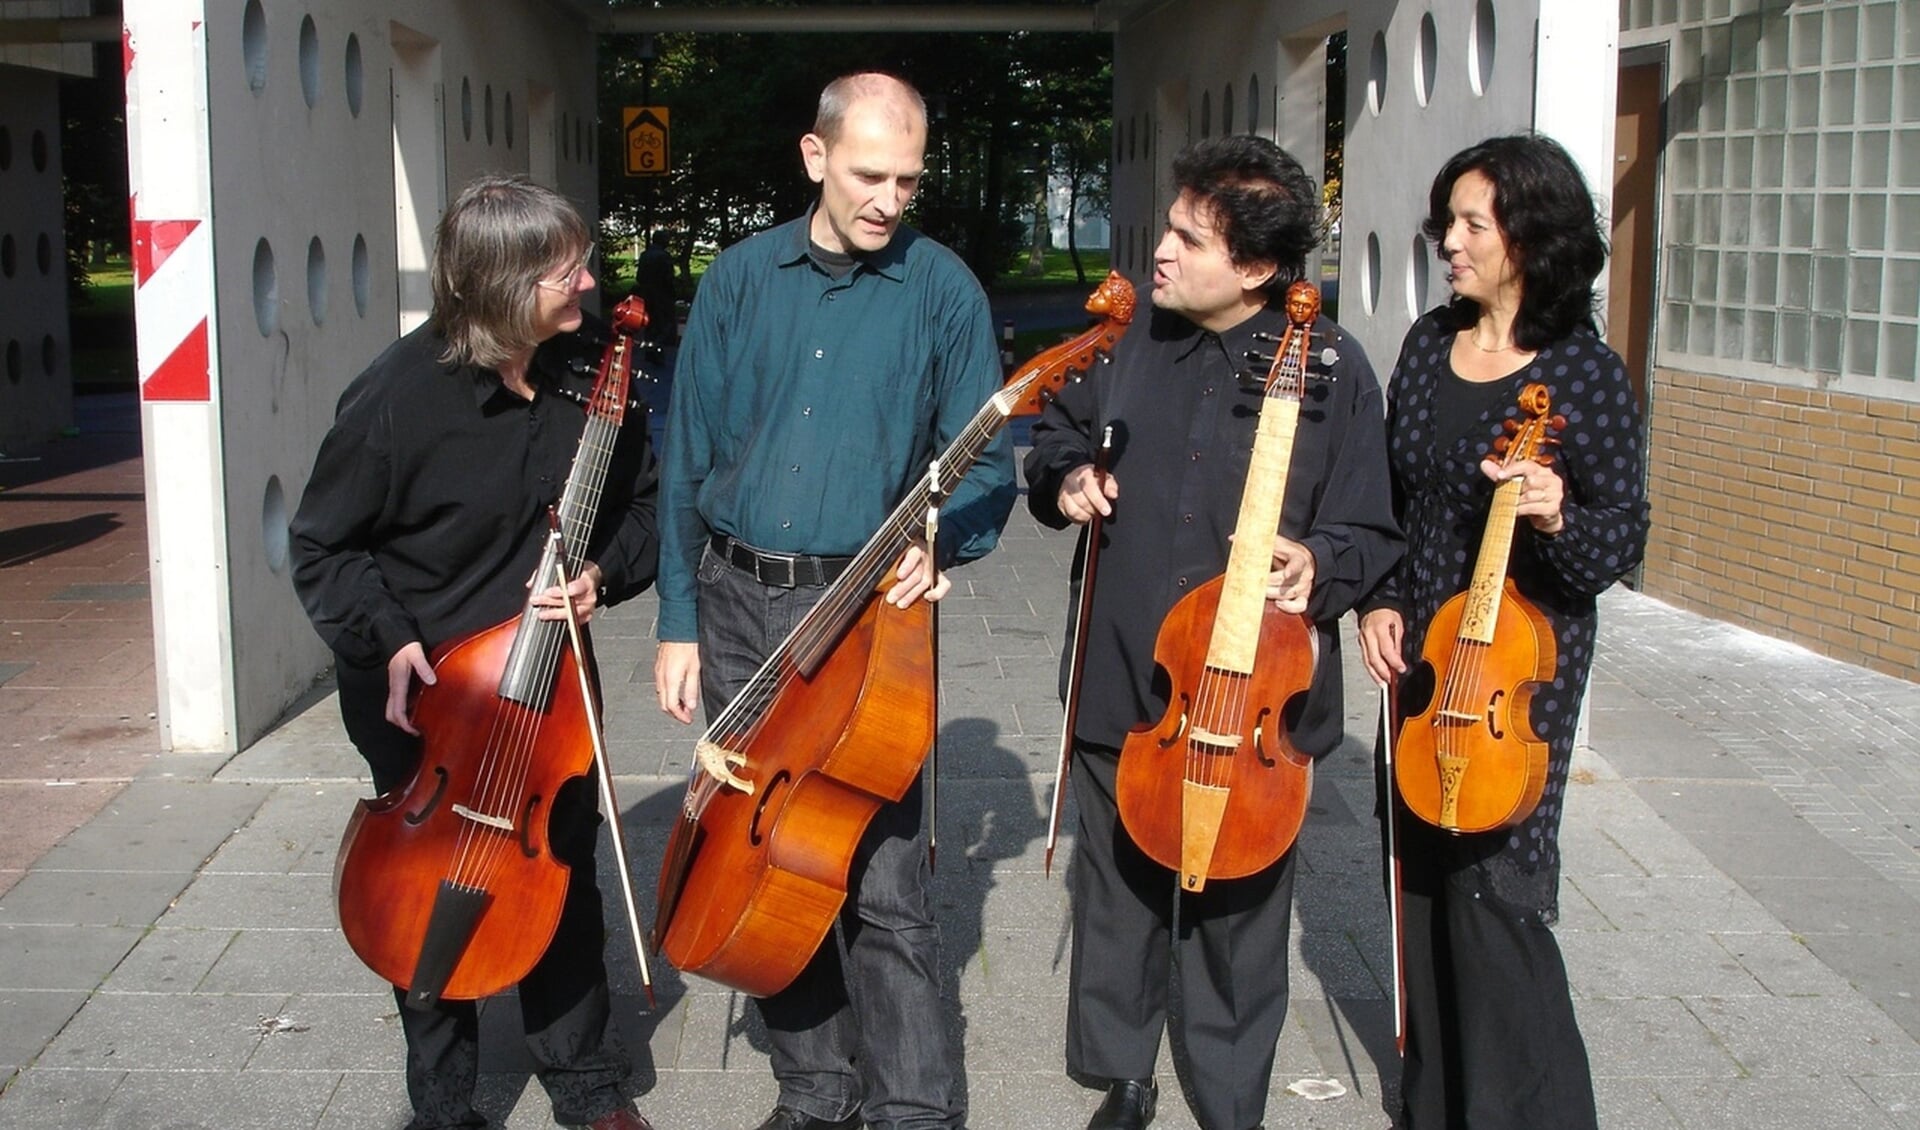 Bijlmerconsort haalt met de viola da gamba vierhonderd jaar oude muziek naar het heden.